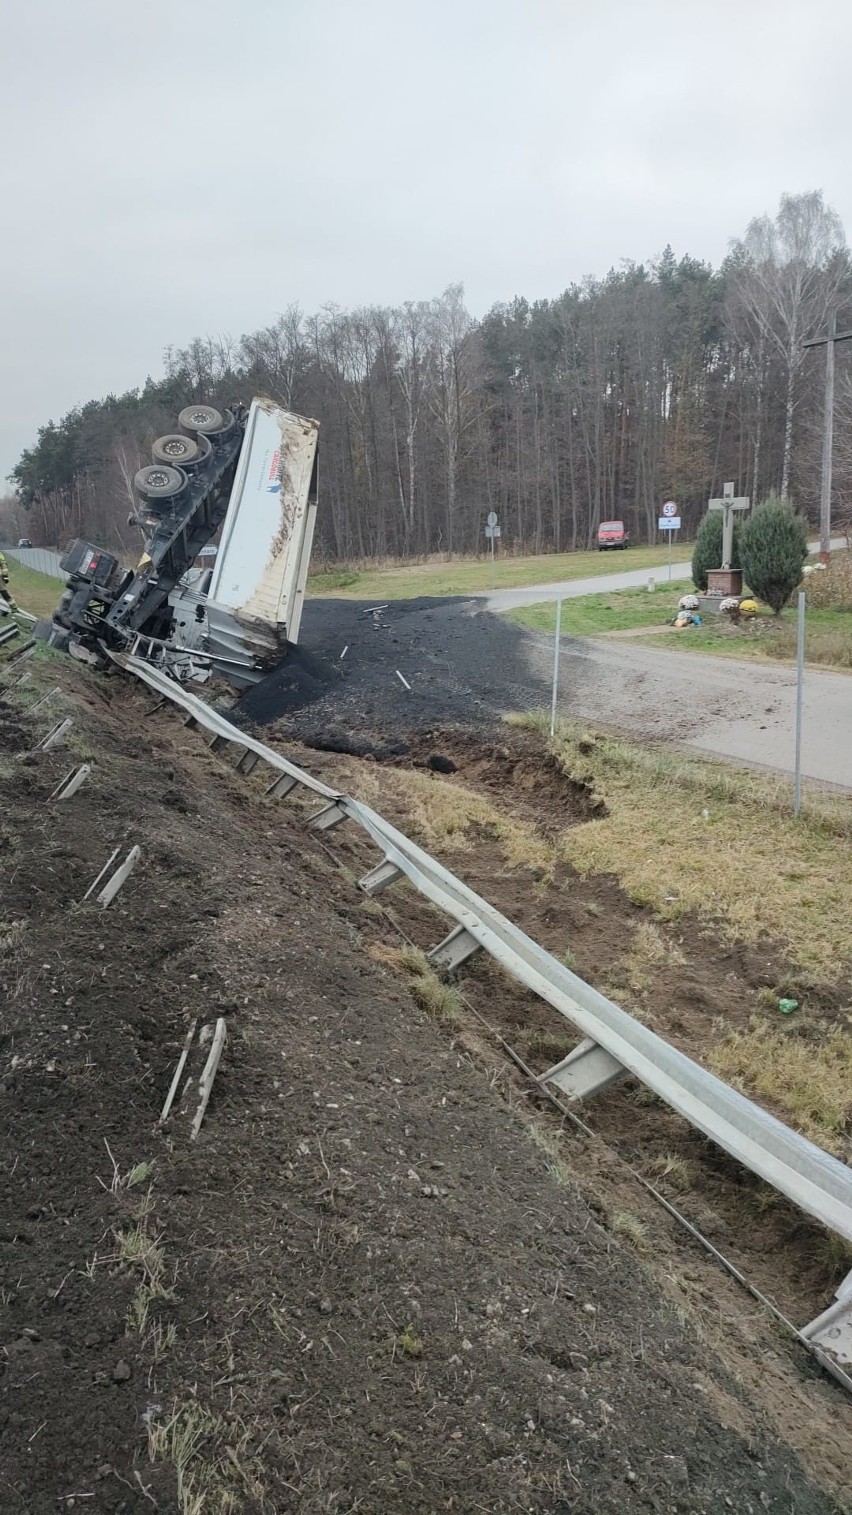 Groźny wypadek na trasie S7 w powiecie białobrzeskim. Samochód ciężarowy wjechał w bariery i przewrócił się